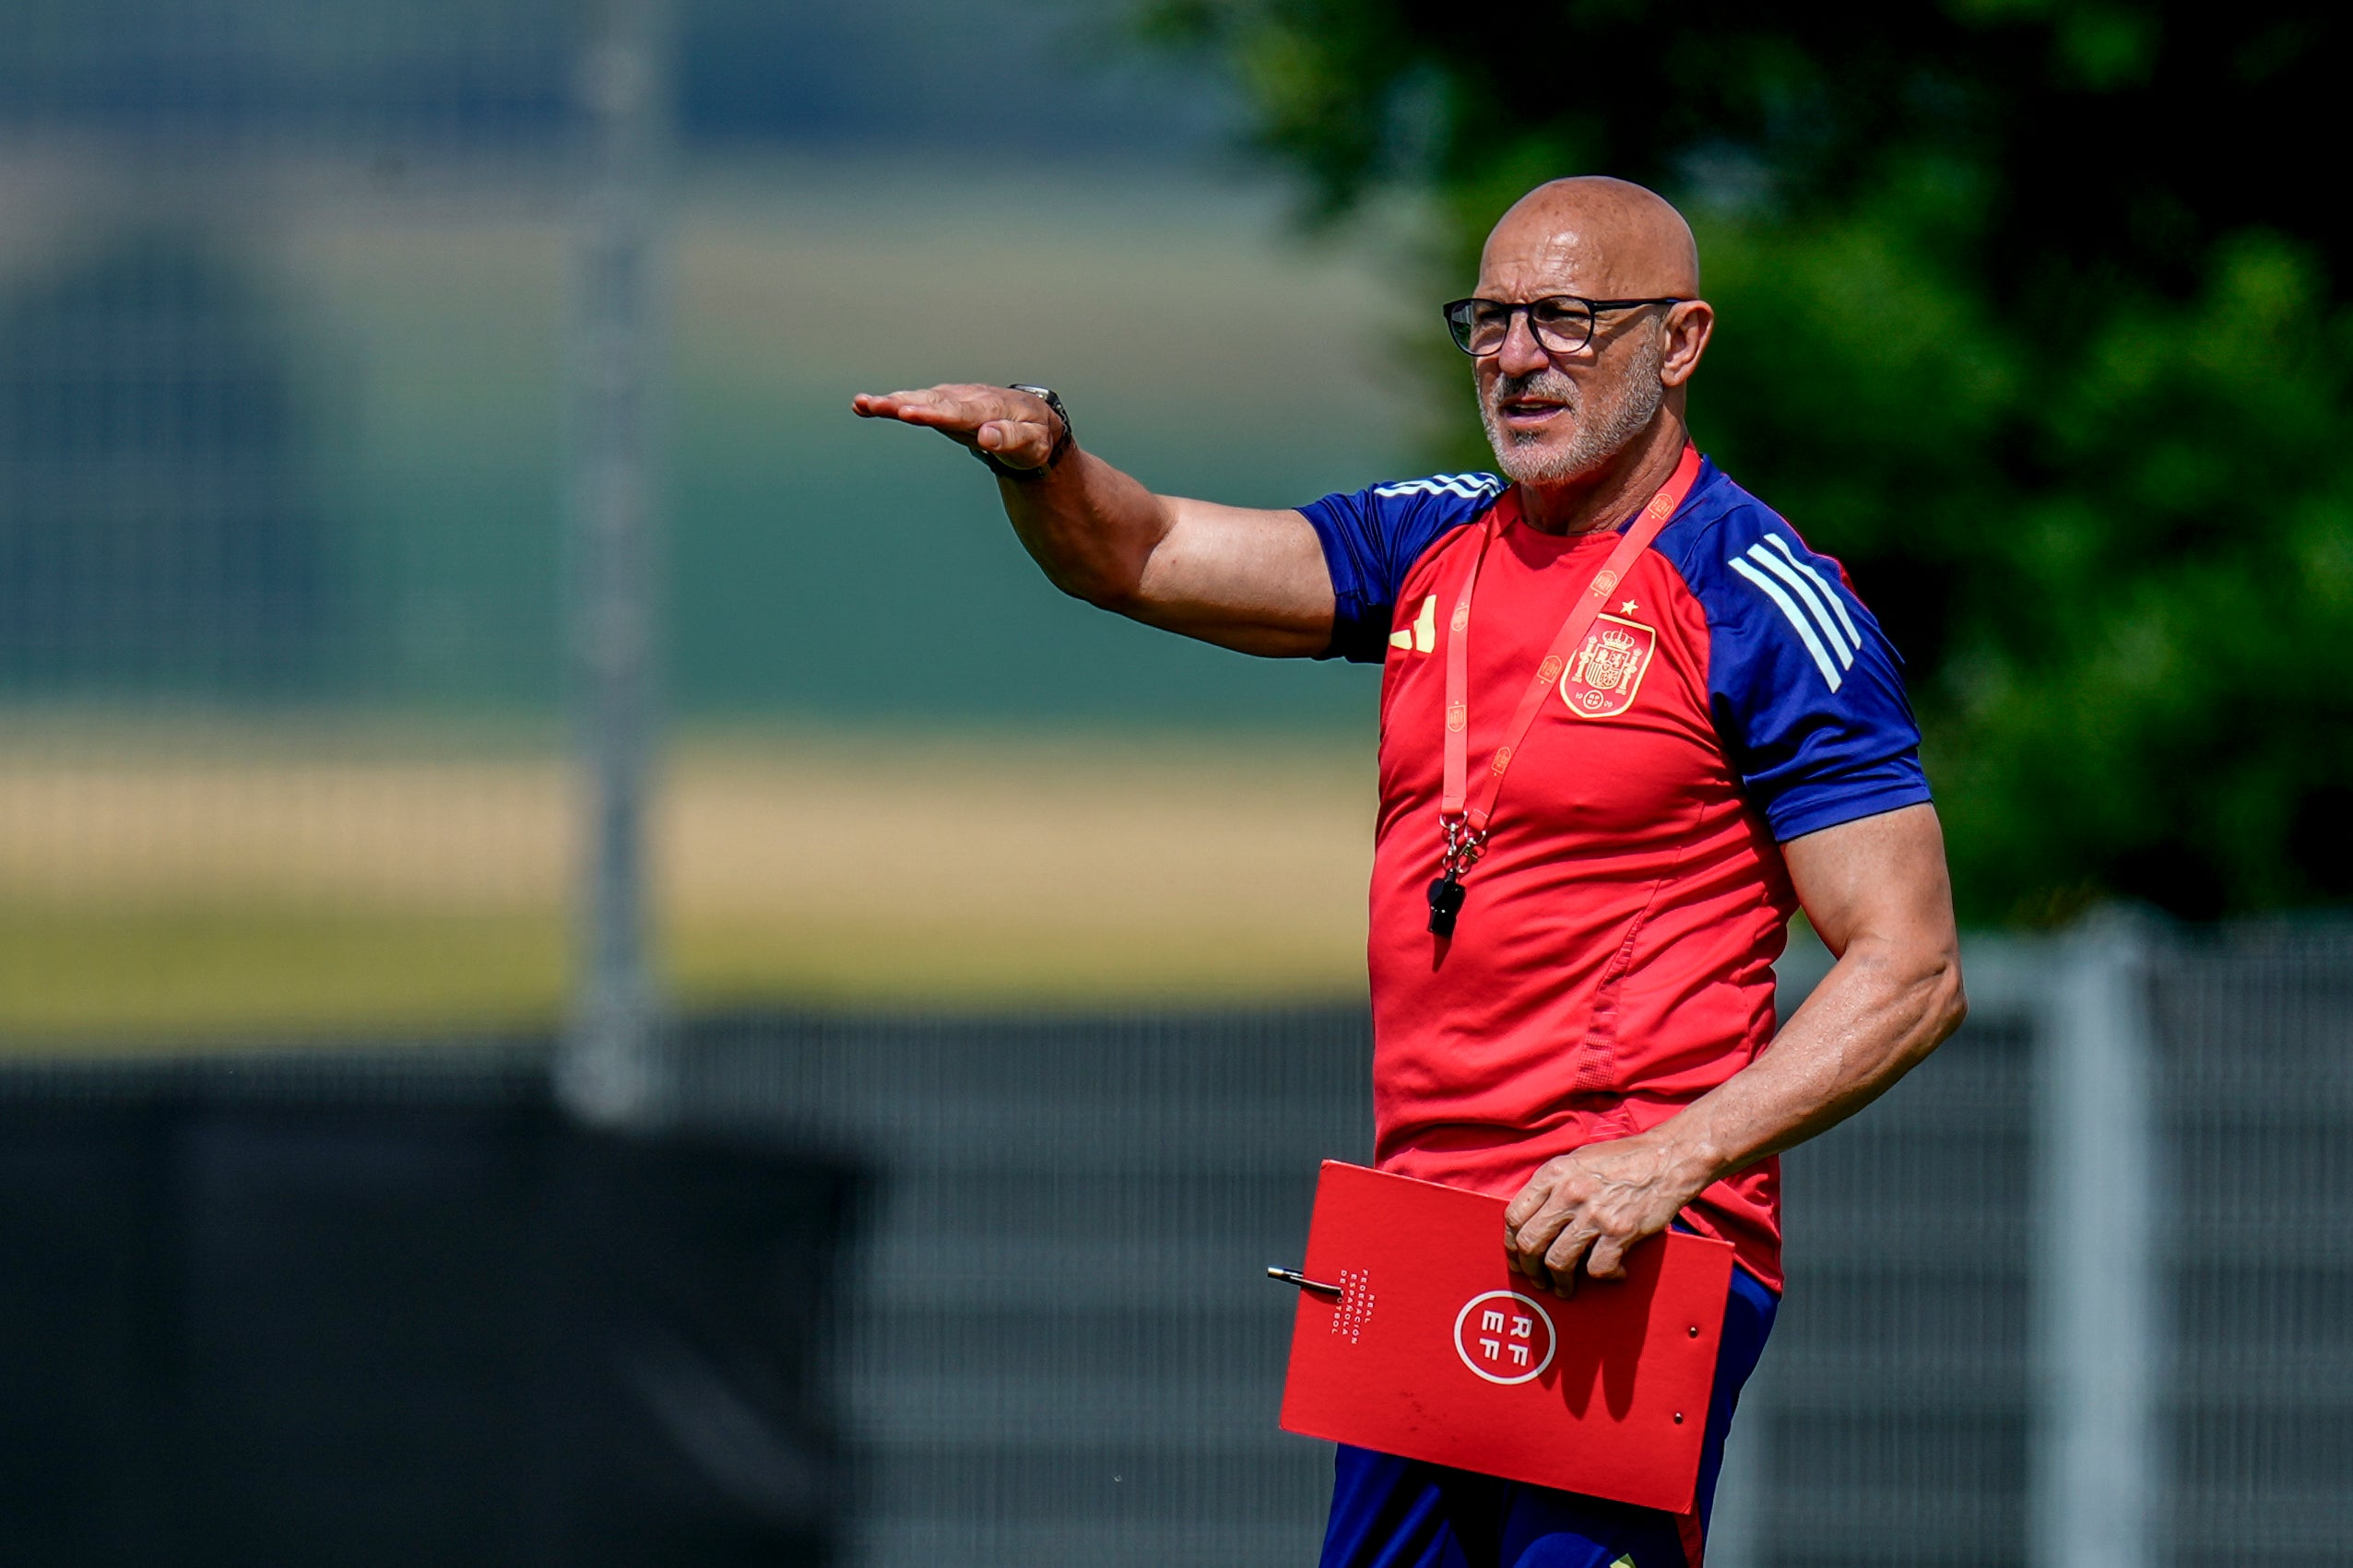 Spain's head coach Luis de la Fuente gestures during a training session